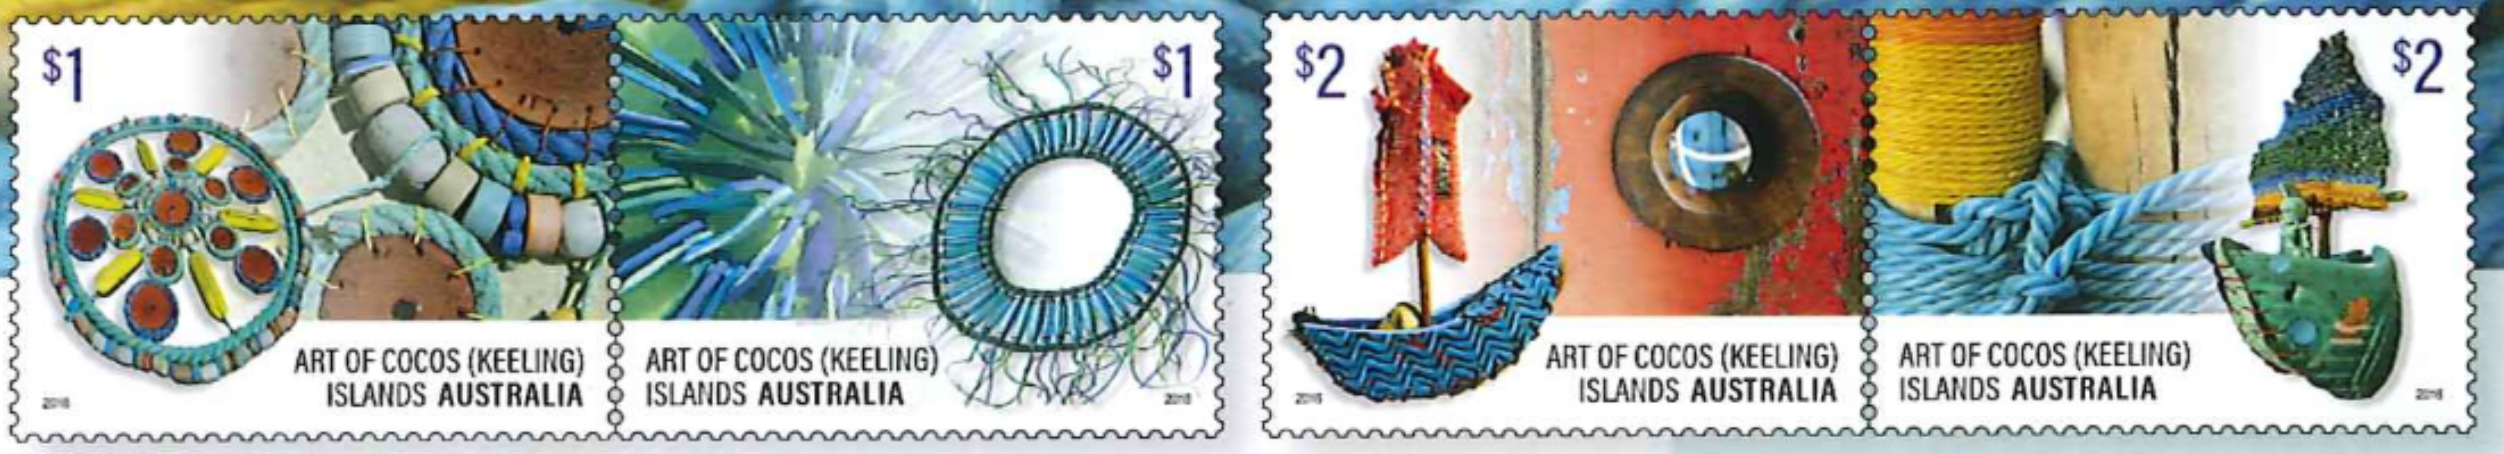 Die Briefmarke der Woche zeigt kunstvolles von den Kokosinseln.